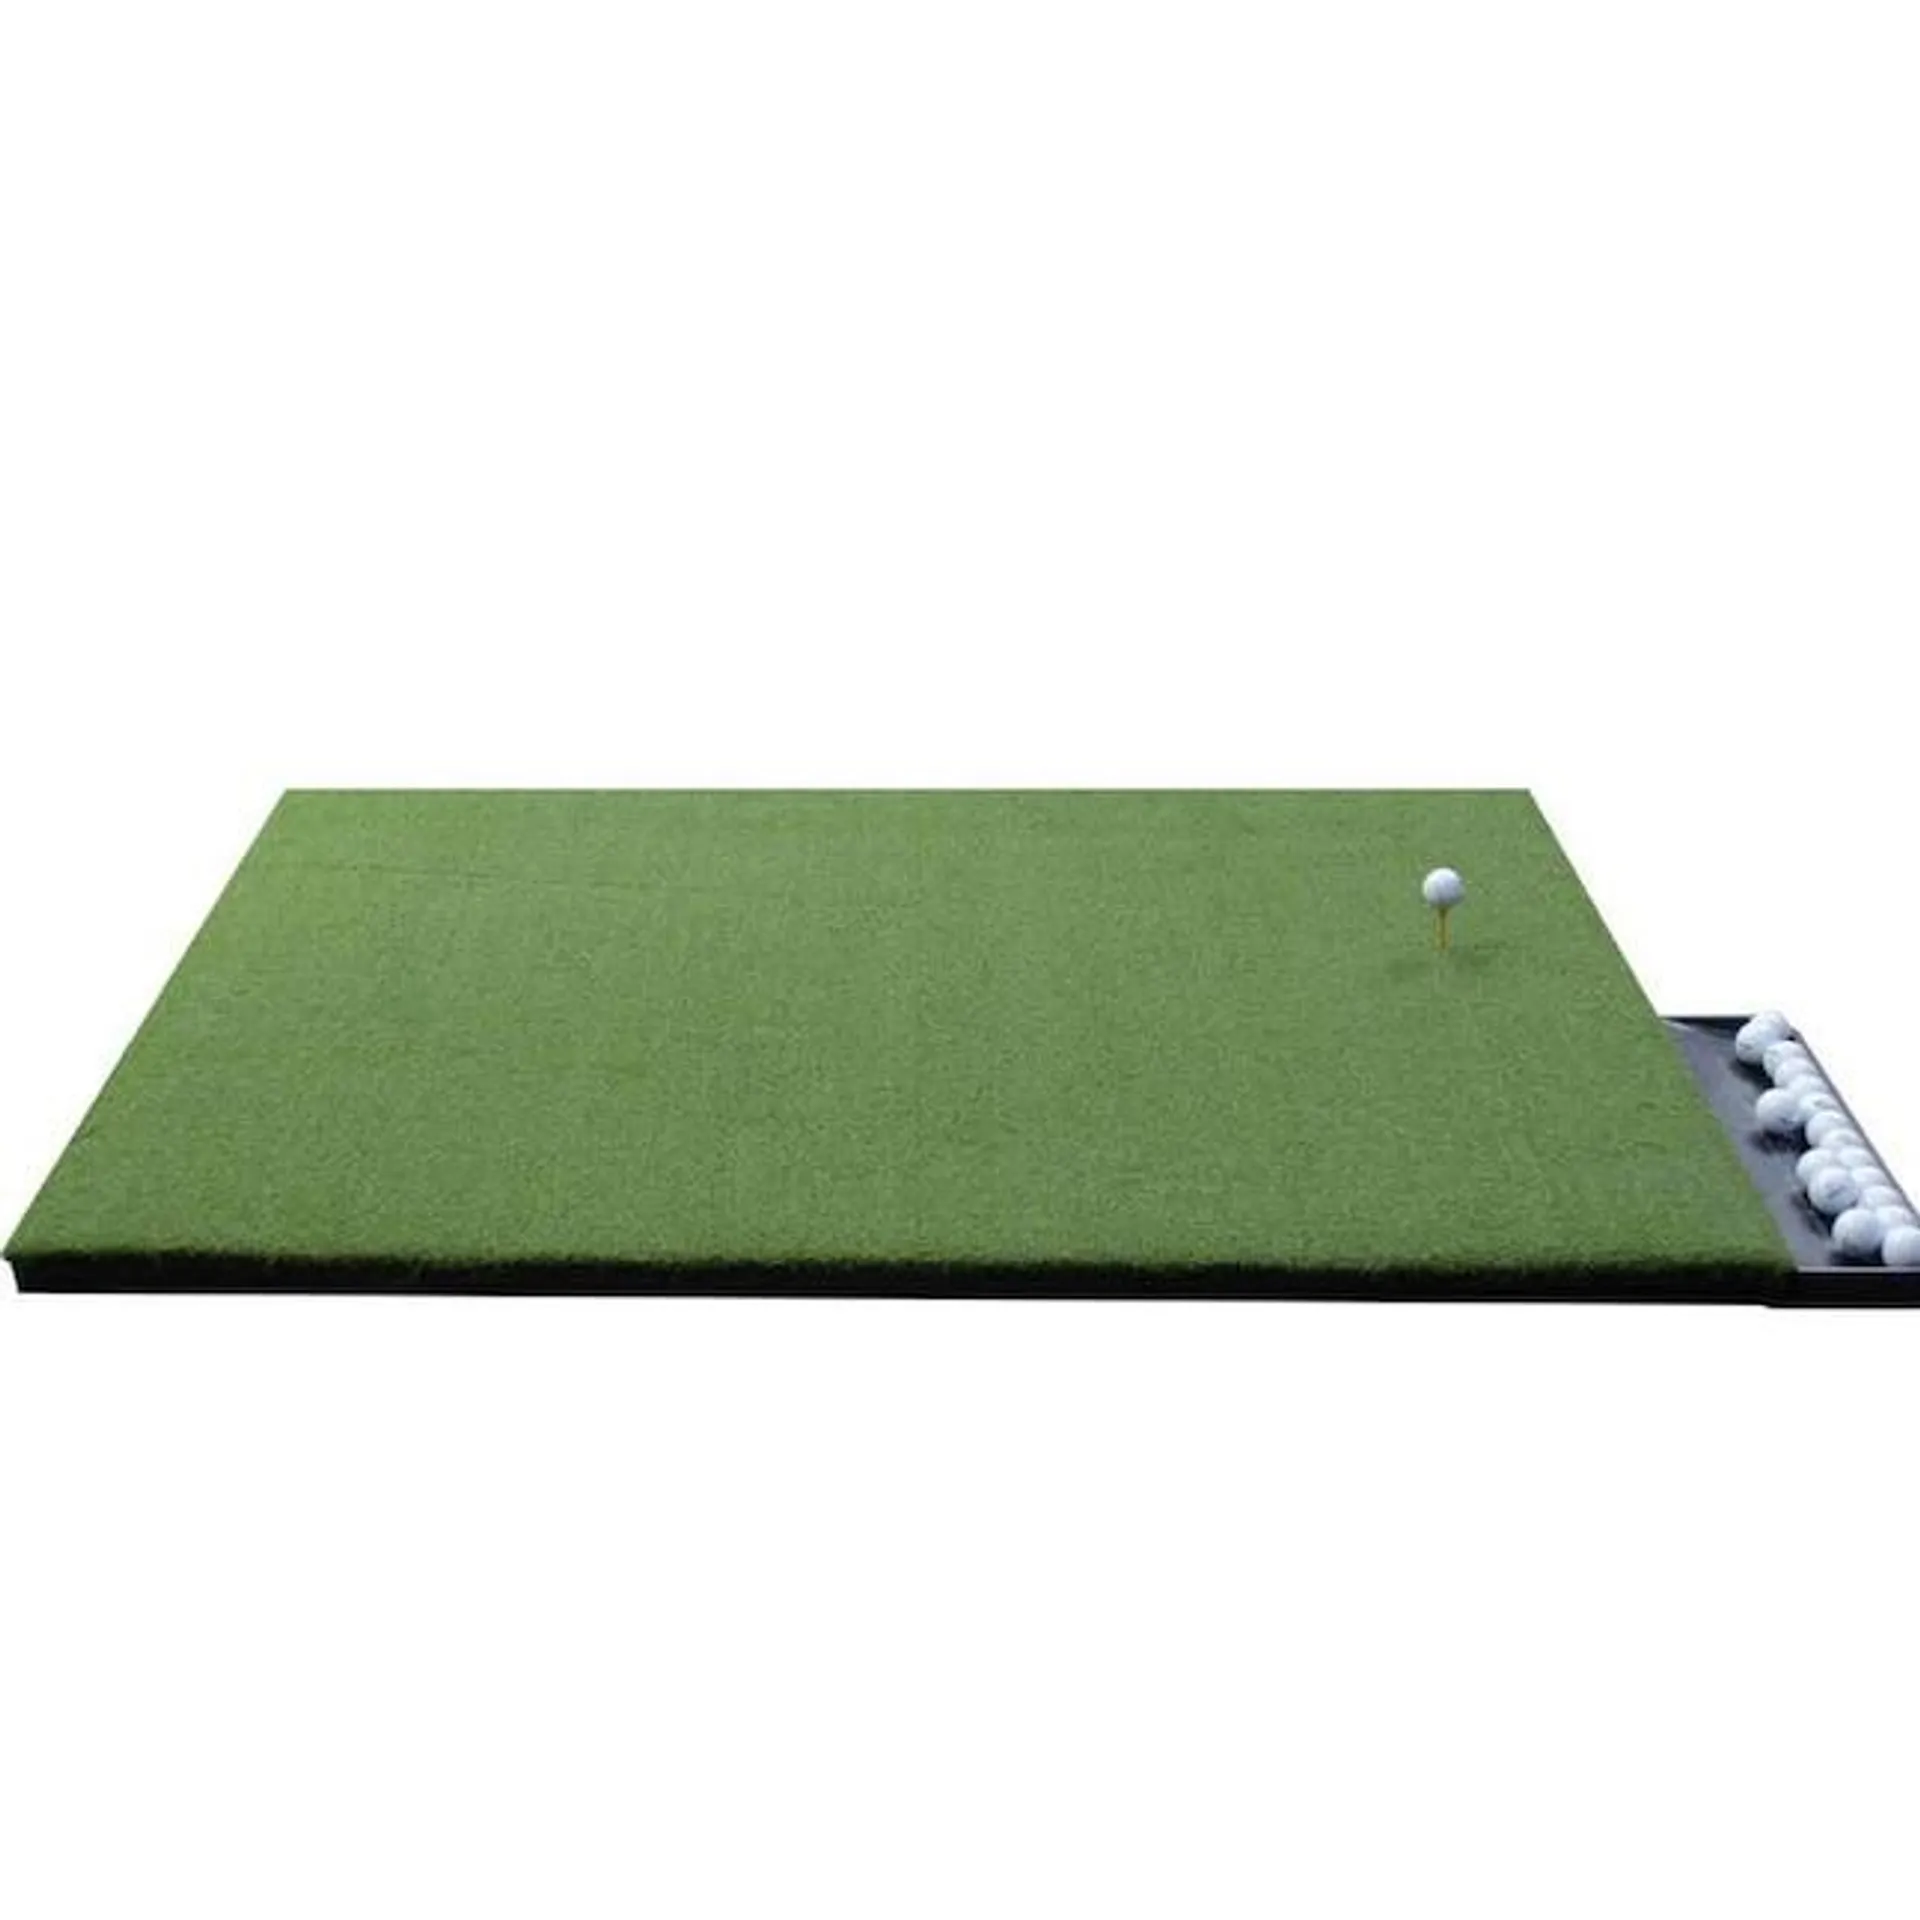 DuraPlay 5-ft x 4-ft Indoor or Outdoor Artificial Grass